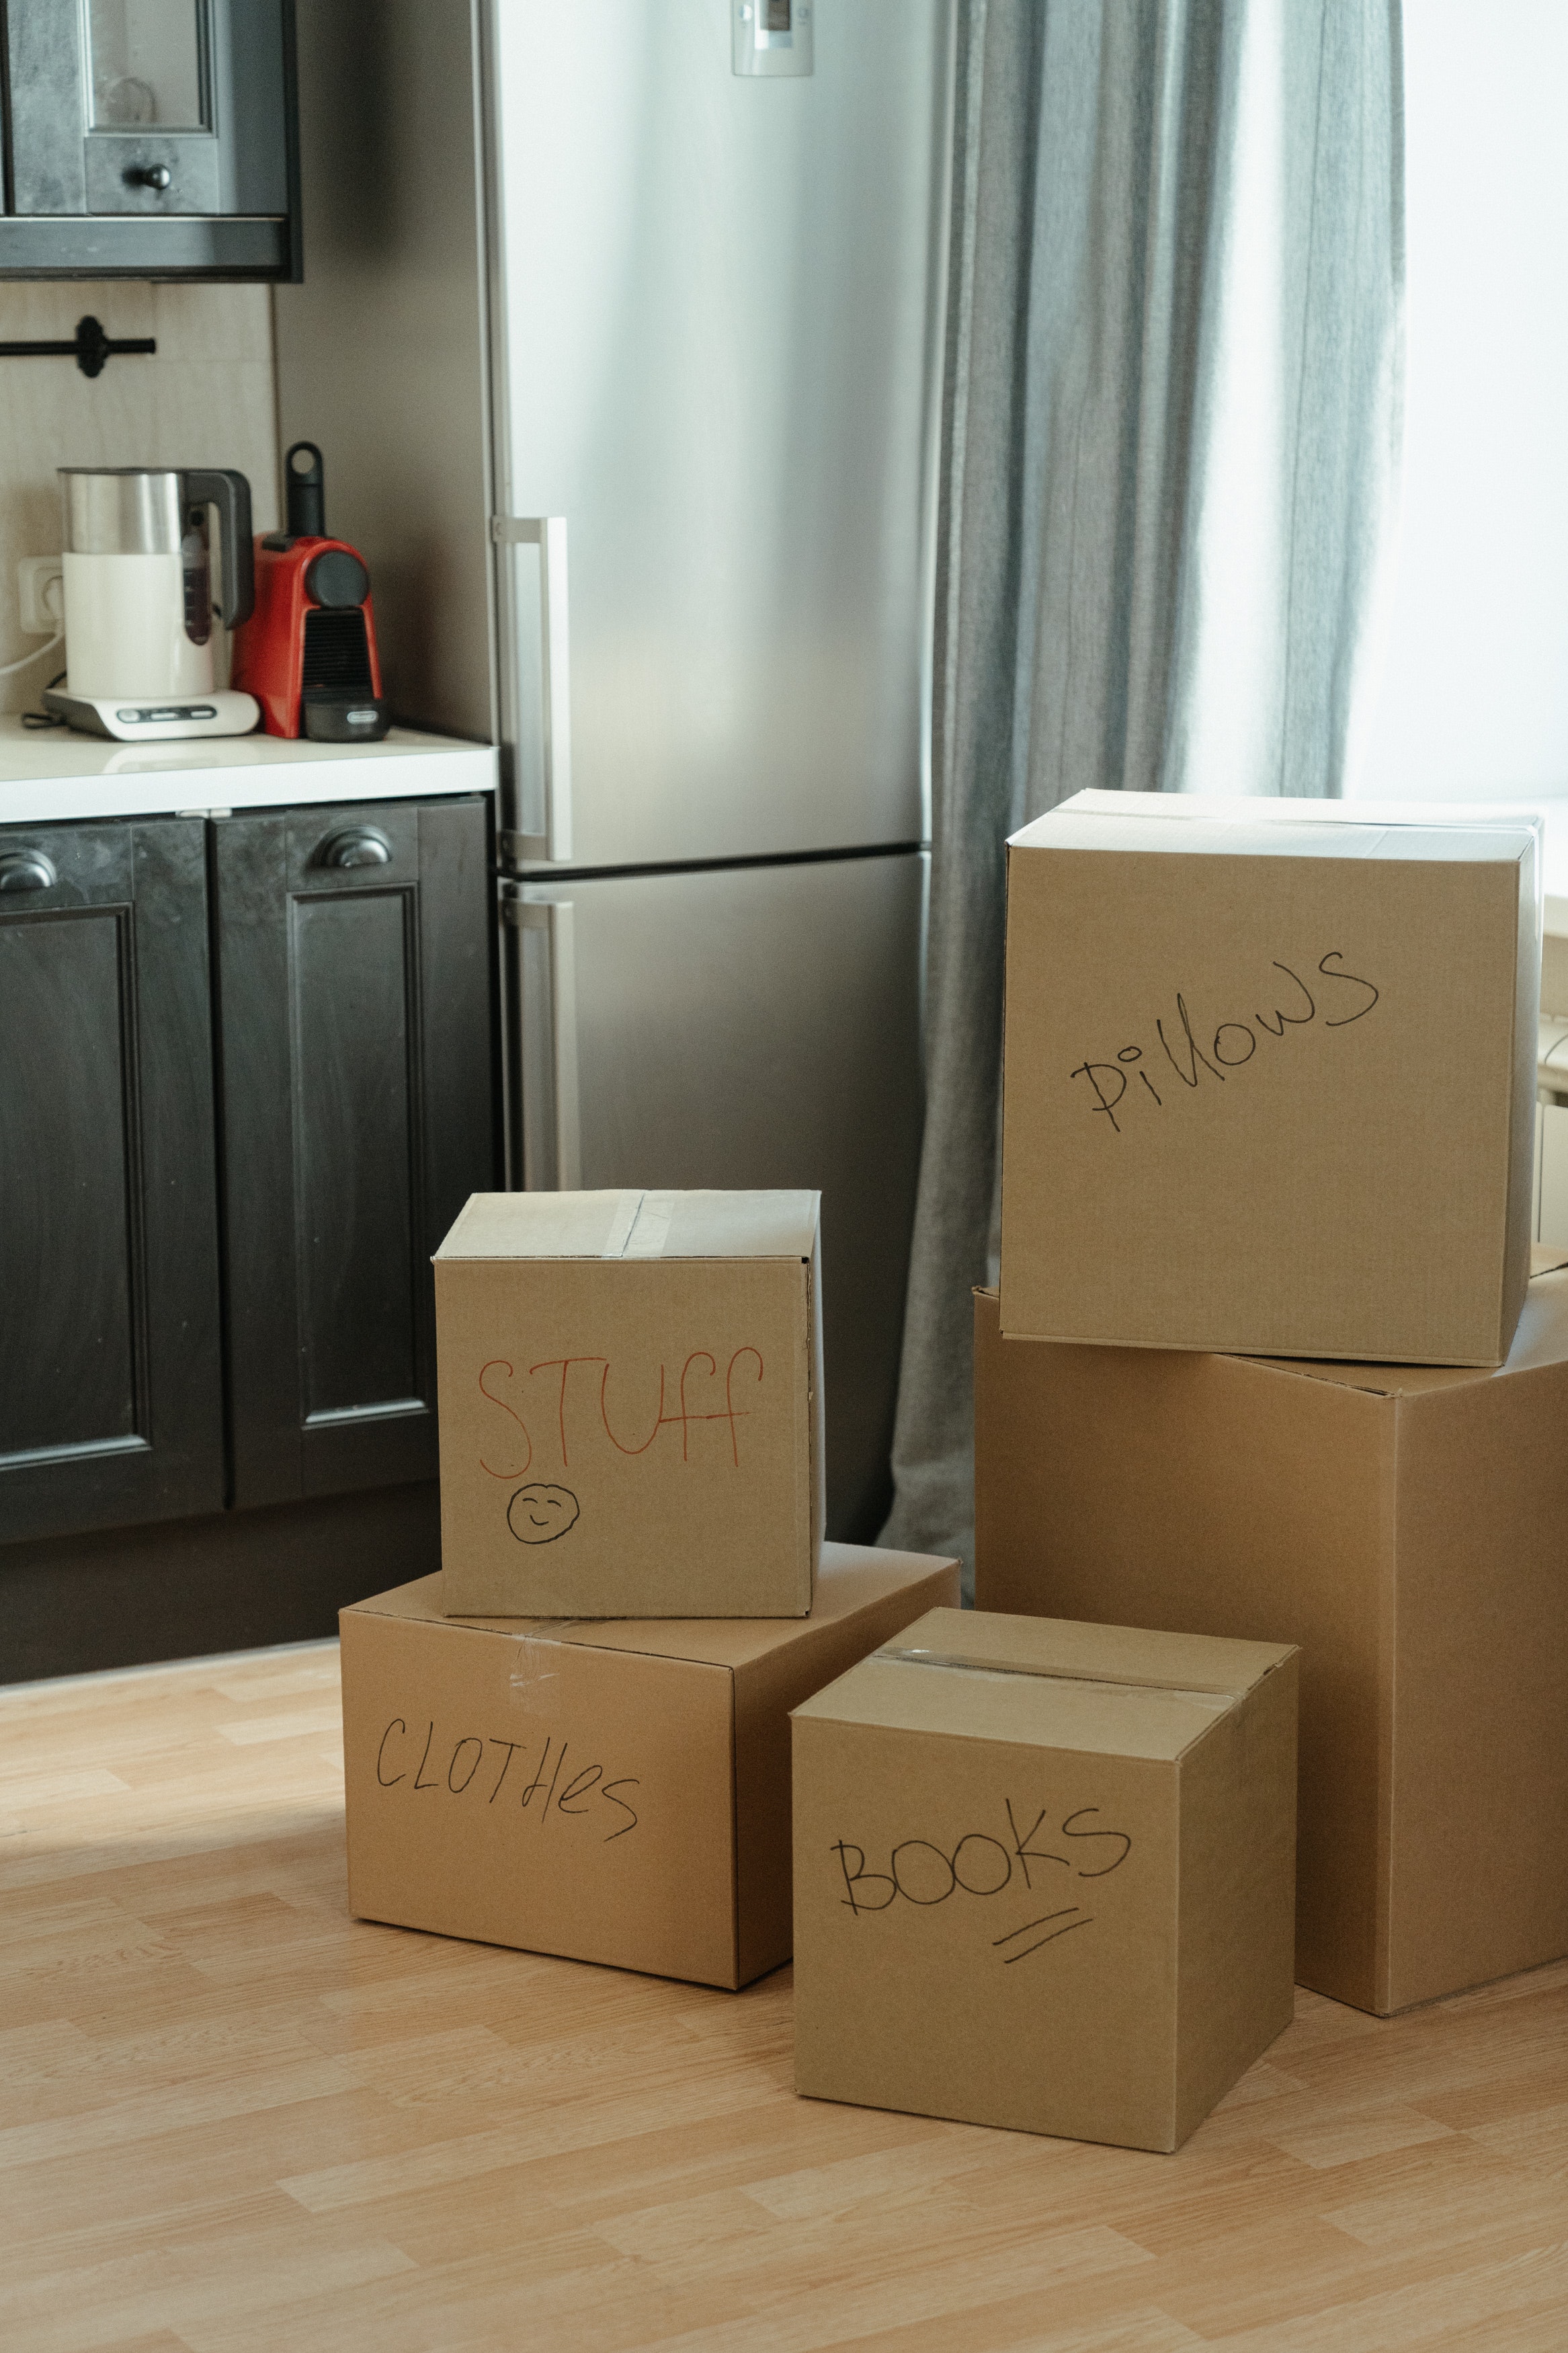 Cardboard boxes of belongings